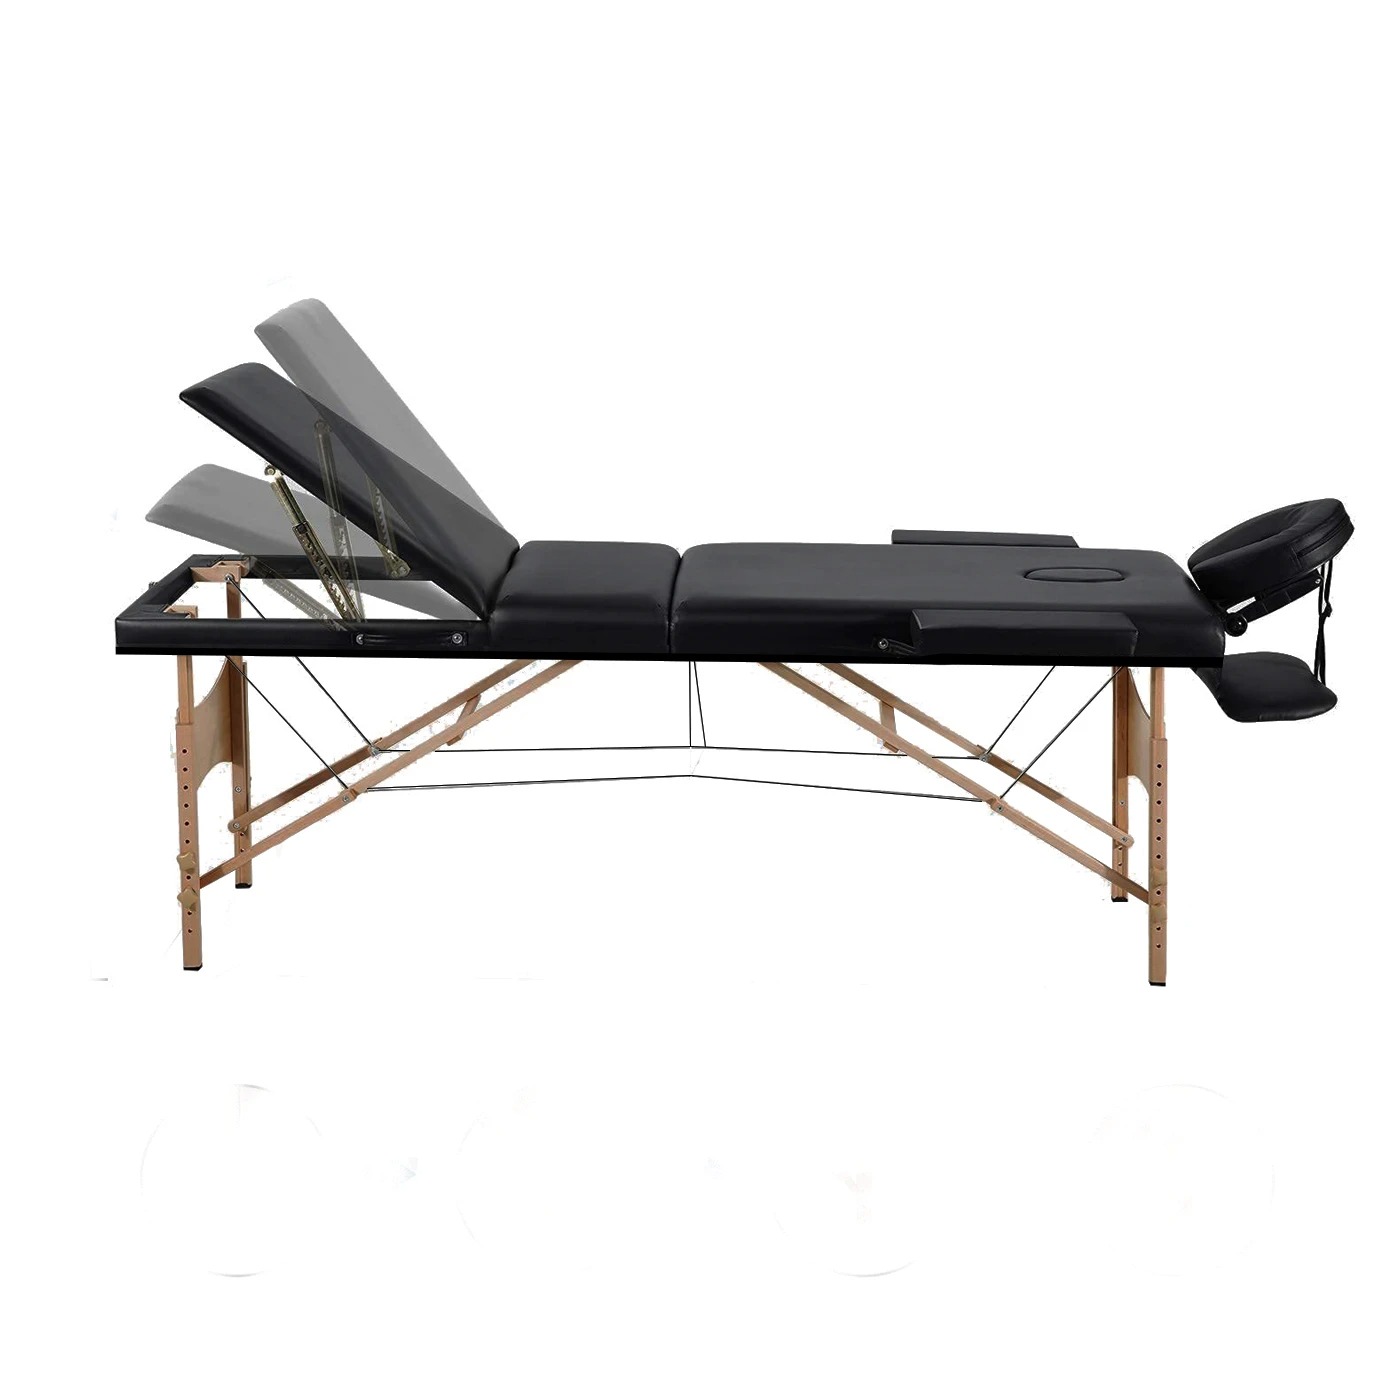 Camilla de masaje portátil ajustable de 3 cuerpos Foto 7187688-3.jpg